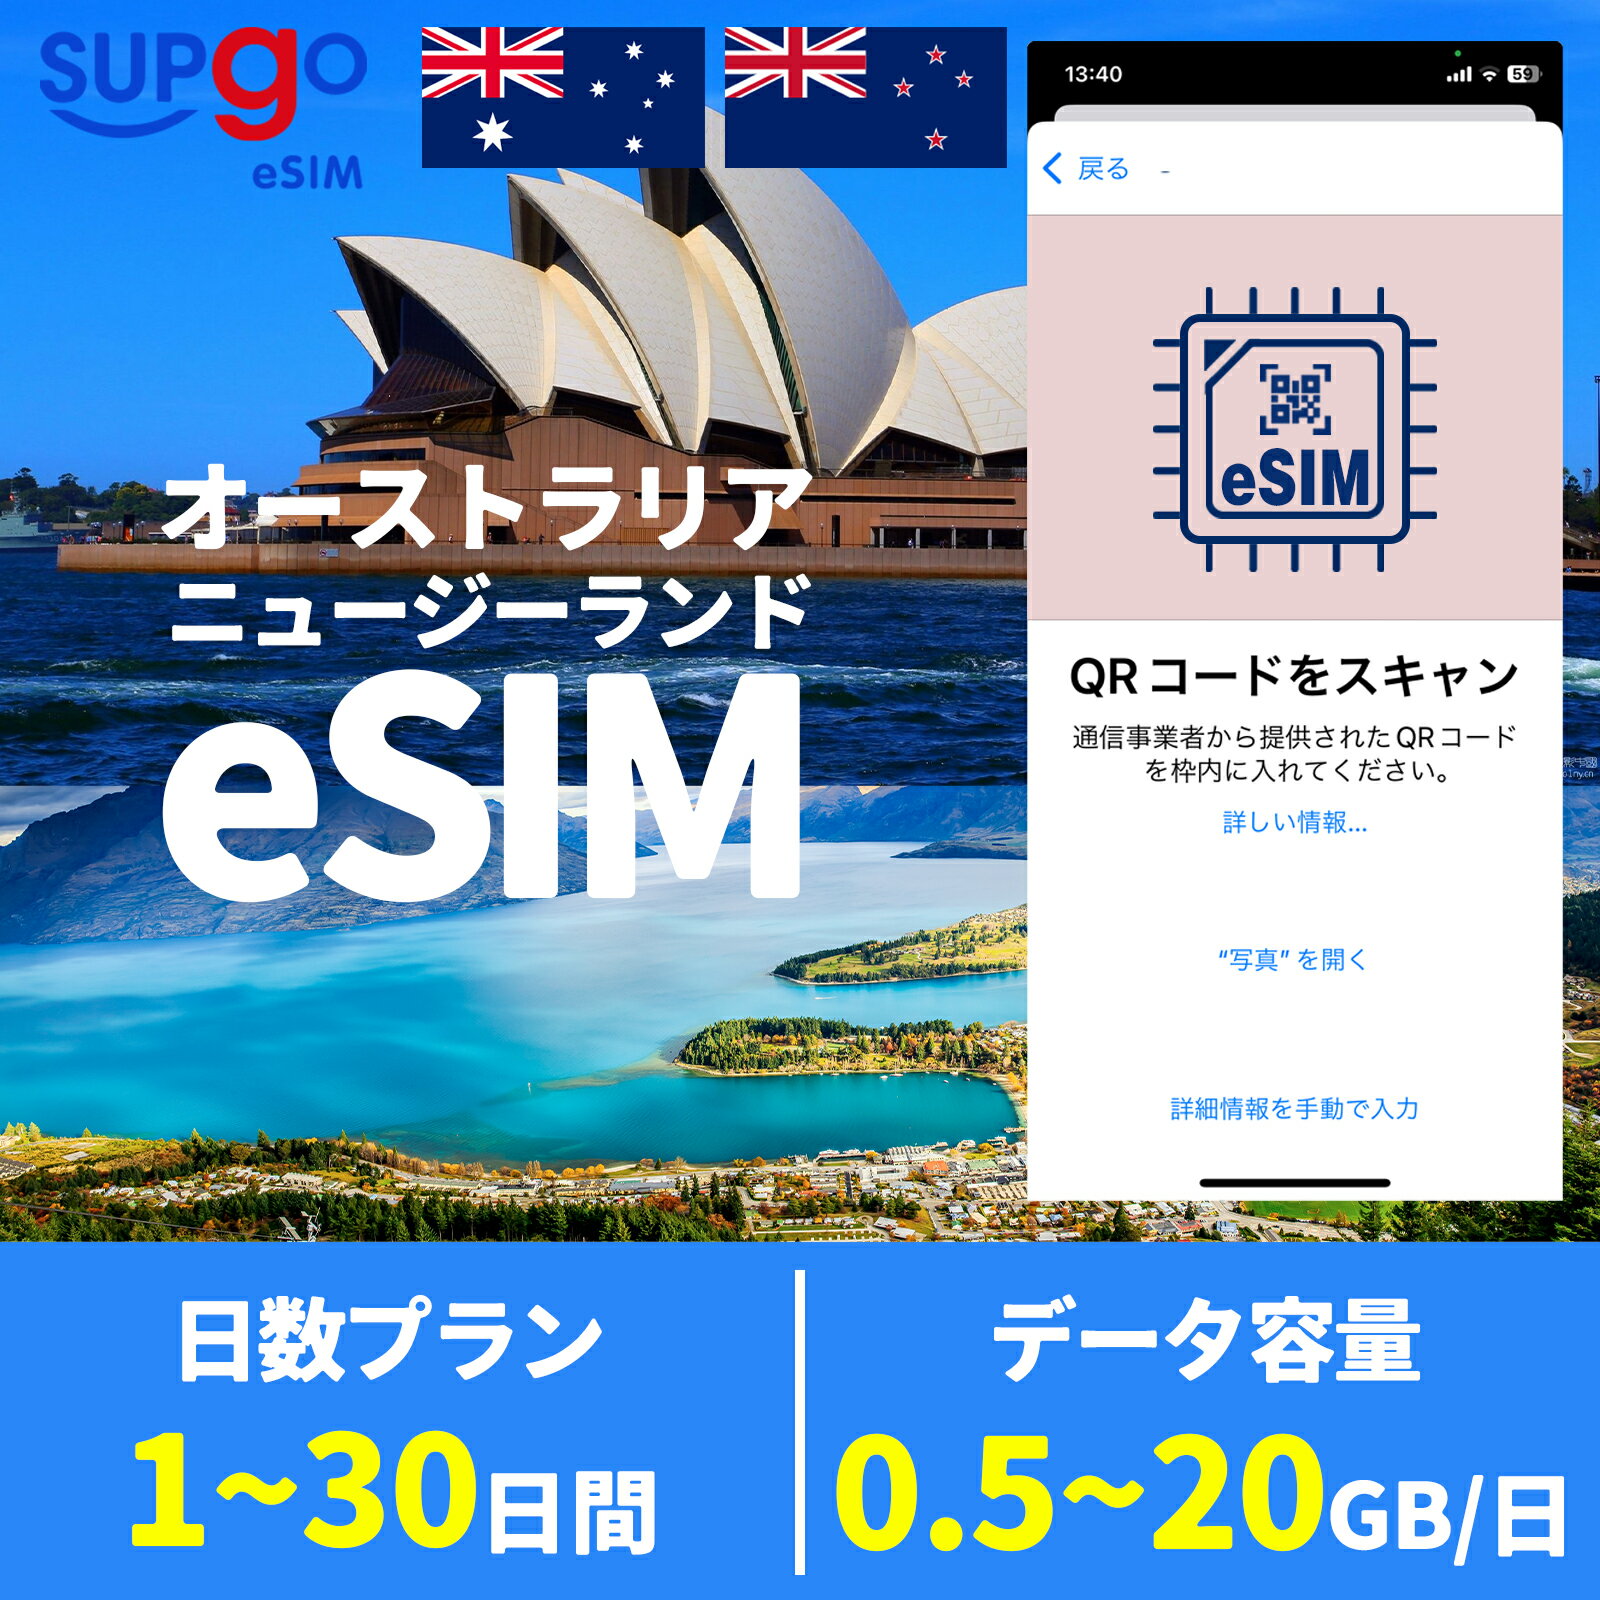 商品情報 商品名 eSIM オーストラリア Australia ニュージーランド New Zealand データ無制限 SIMタイプ eSIM 使用可能日数 1日間 3日間 5日間 7日間 10日間 15日間 20日間 30日間 データ容量 高速データ500MB/日 のち無制限（500MB以外128Kbps） 高速データ1GB/日 のち無制限（1GB以外128Kbps） 高速データ2GB/日 のち無制限（2GB以外128Kbps） 高速データ合計3GB のち無制限（3GB以外128Kbps） 高速データ合計5GB のち無制限（5GB以外128Kbps） 高速データ合計10GB のち無制限（10GB以外128Kbps） 高速データ合計20GB のち無制限（20GB以外128Kbps） 対応地域 オーストラリア ニュージーランド Can be used in the following regions: Australia New Zealand 注意事項 電話およびメッセージの機能がありません。30日以内に携帯電話に読み込んでください。それ以降は期限切れとなります。 購入されたデータパッケージは、eSIMがデバイスにインストールされると自動的にアクティブ化されます。 対応地域でのみアクティブにすることができます。海外に行く1日前にeSIMコードをスキャンすることをお勧めいたします。 ご注意：eSIM通信プランに日本が含まれている場合、日本で設定とアクティベート当日に時間がカウントされます。